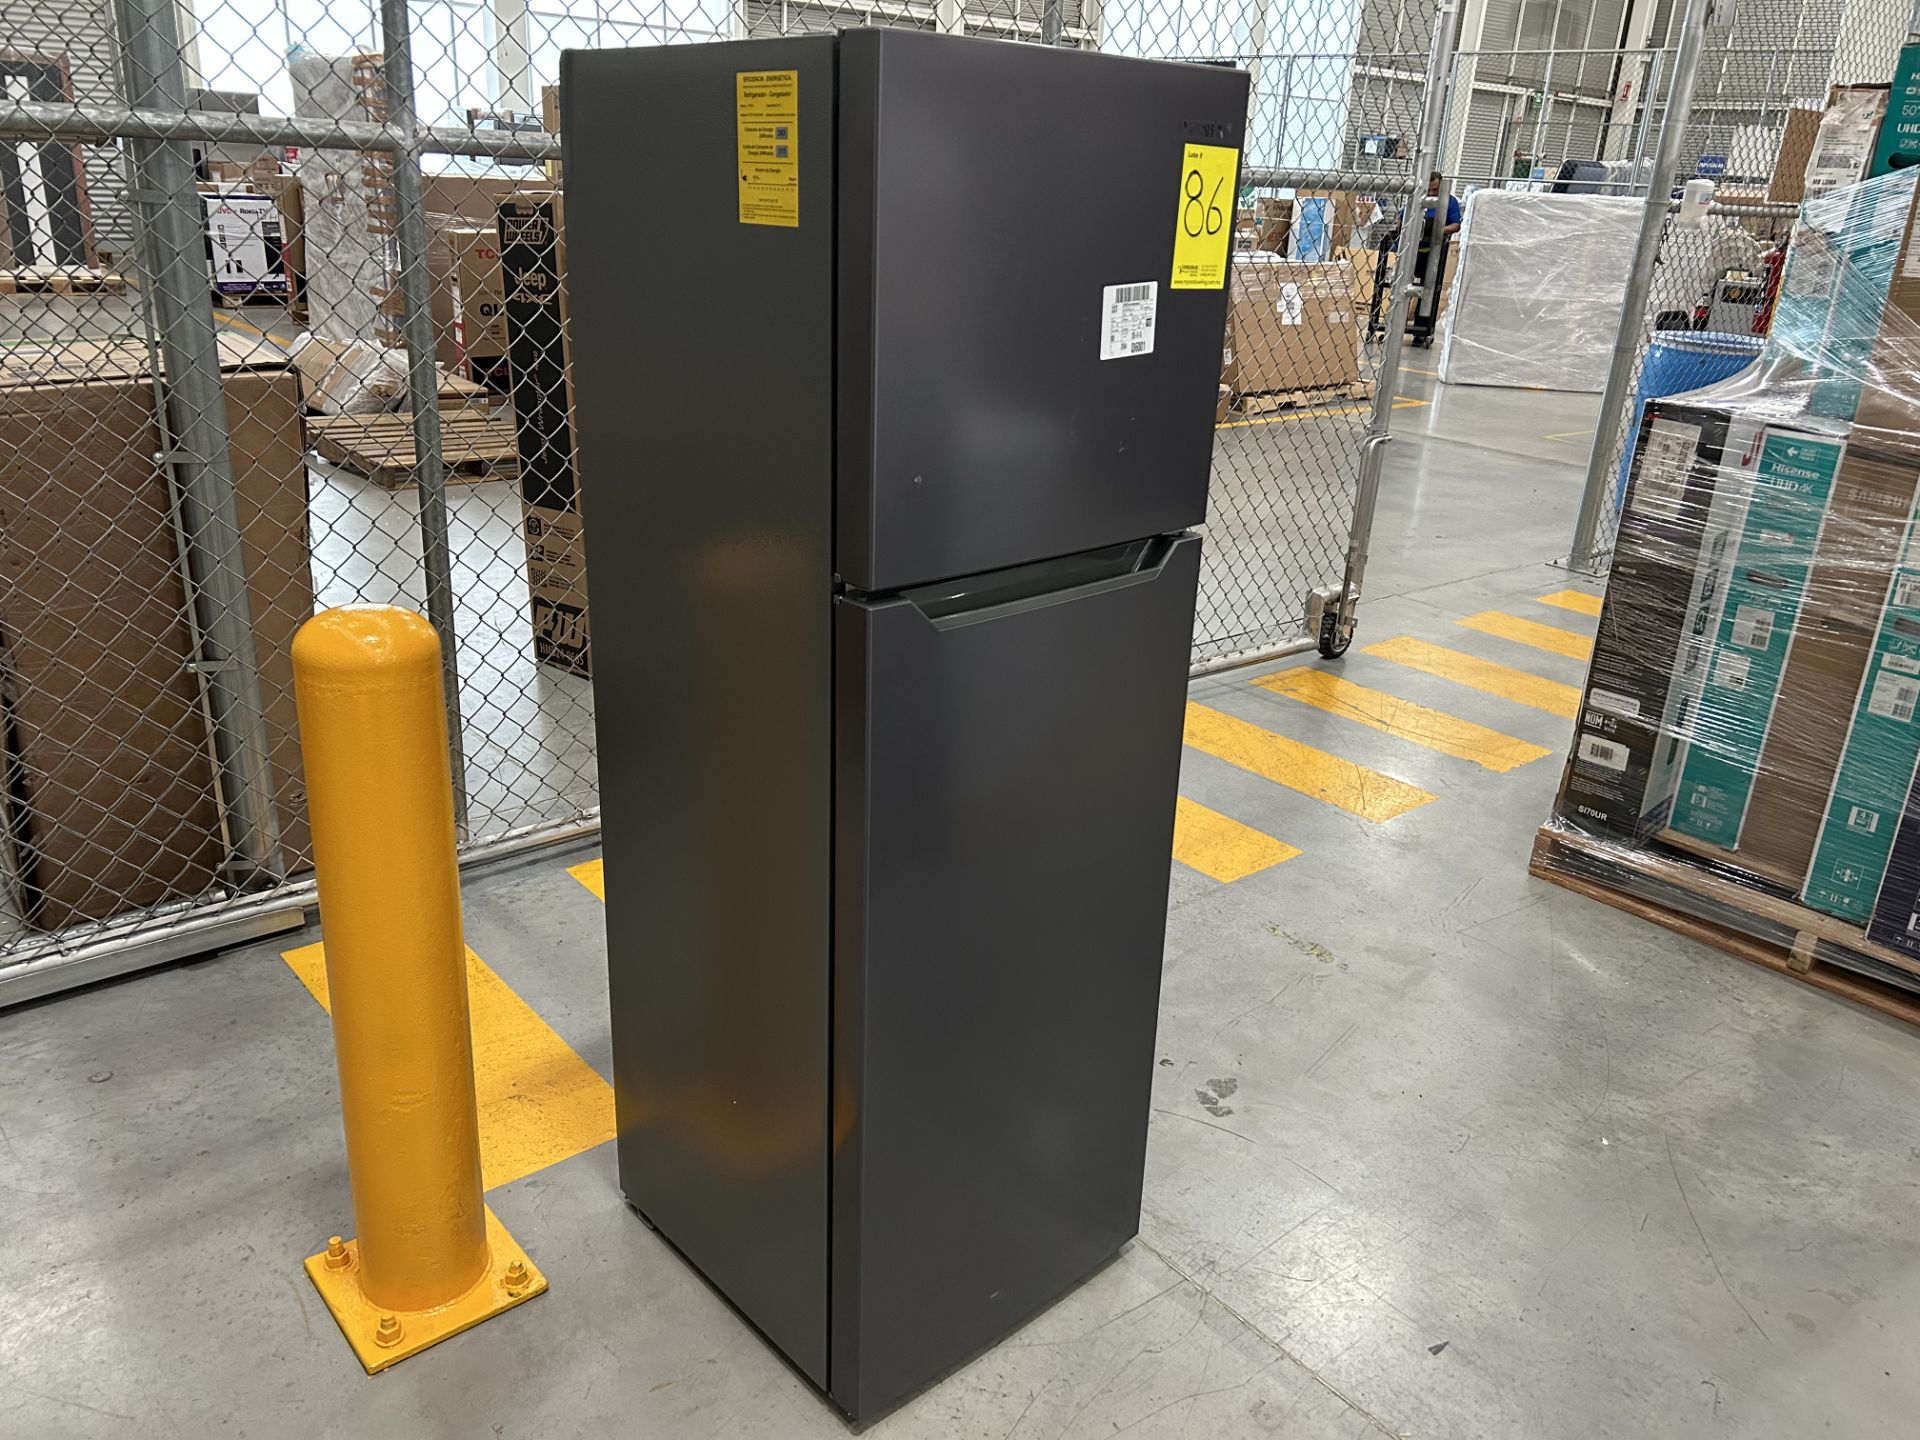 Lote de 2 refrigeradores contiene: 1 refrigerador Marca MABE, Modelo RME360FX, Serie 06730, Color G - Image 8 of 12